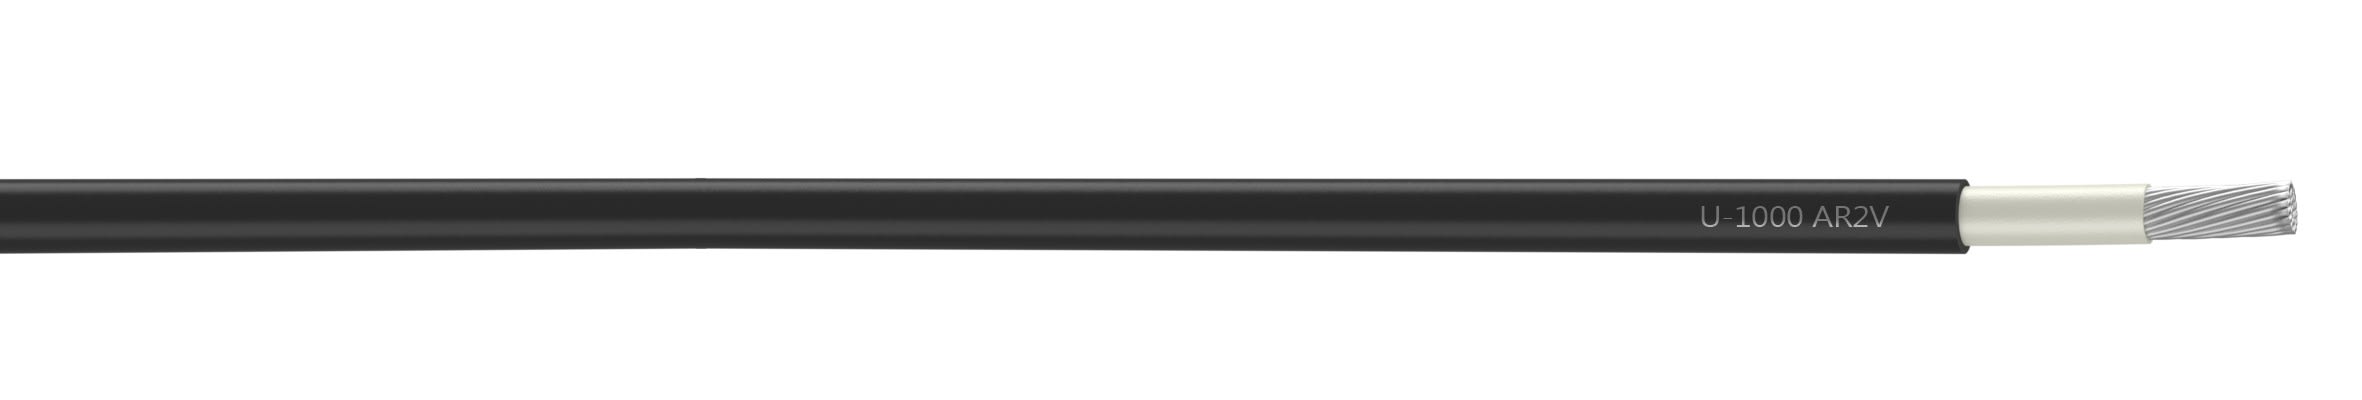 Nexans - Cable rigide U-1000 AR2V aluminium 1x25 longueur a la coupe